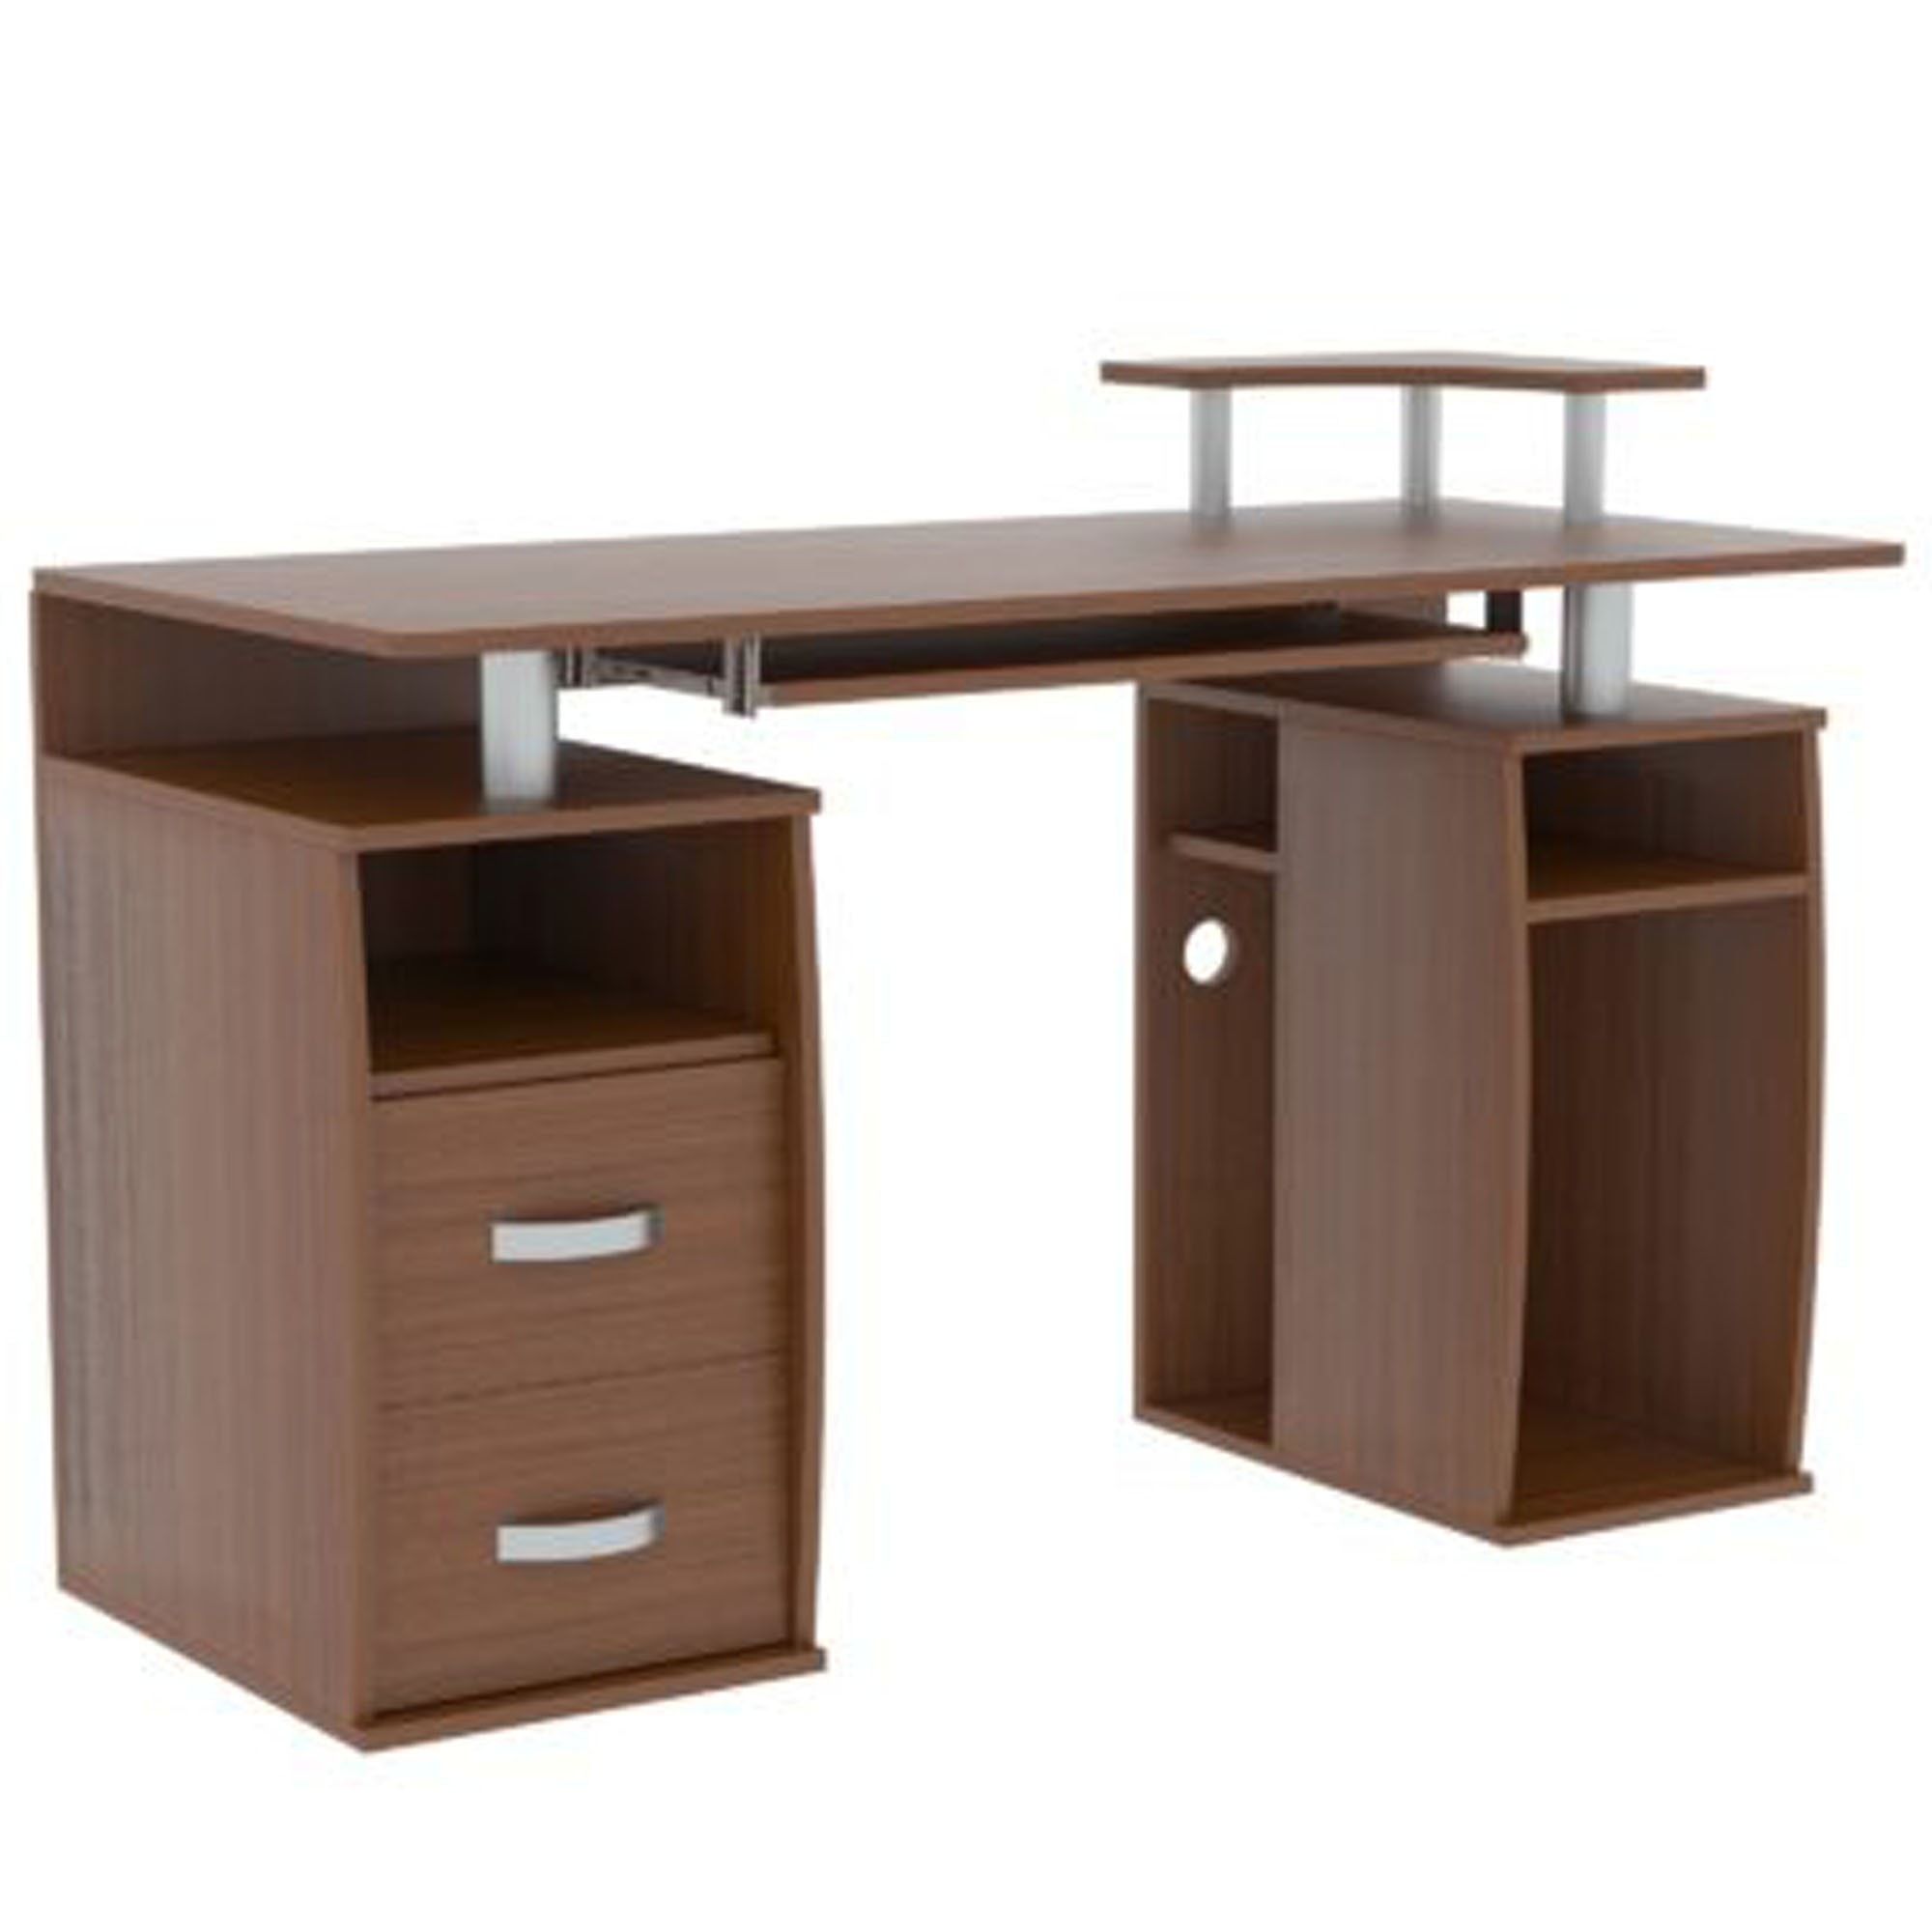 Otley Walnut 2 Drawer Computer Desk | Computer Desks With Regard To Natural Walnut Computer Desks (View 14 of 15)